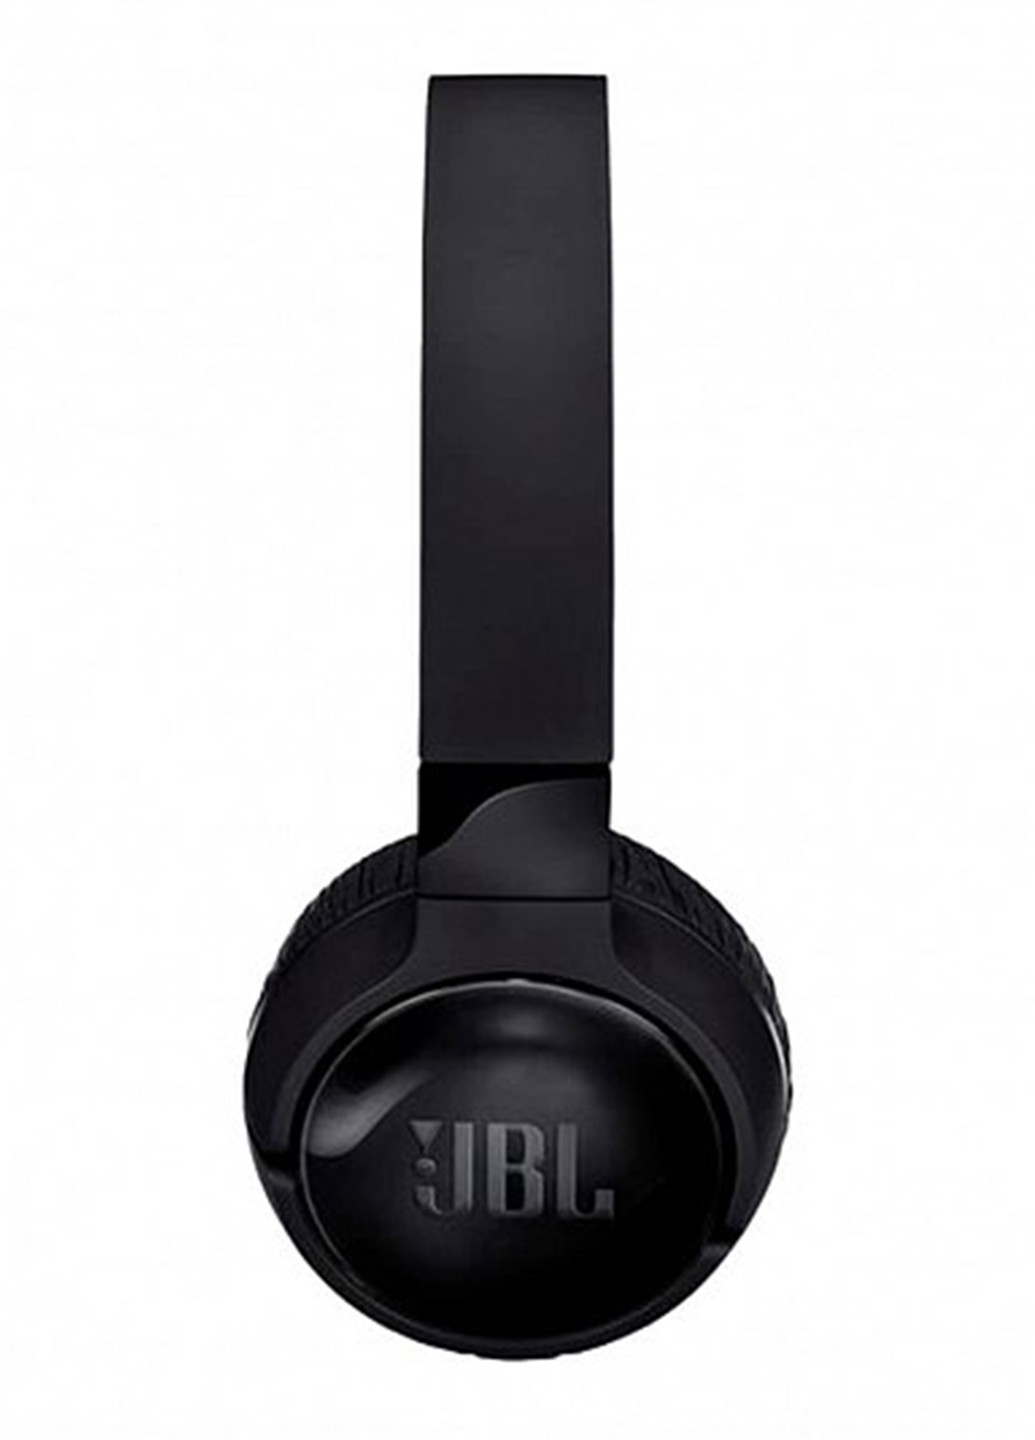 Навушники T600BT Black (T600BTNCBLK) JBL jblt600bt (131629248)